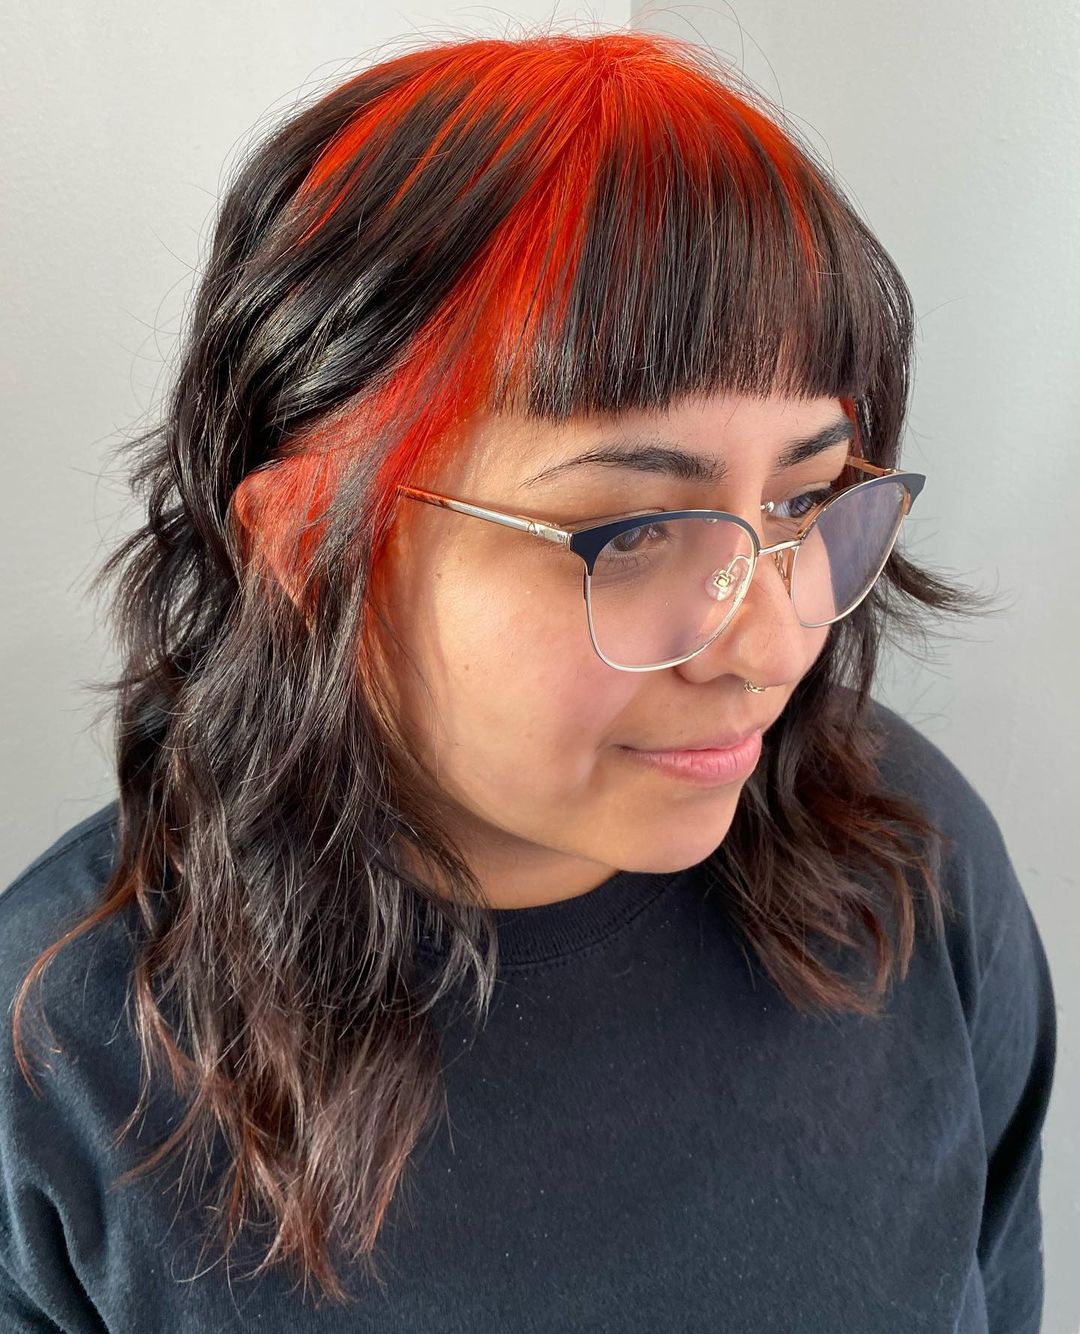 zwart haar met rode wortels